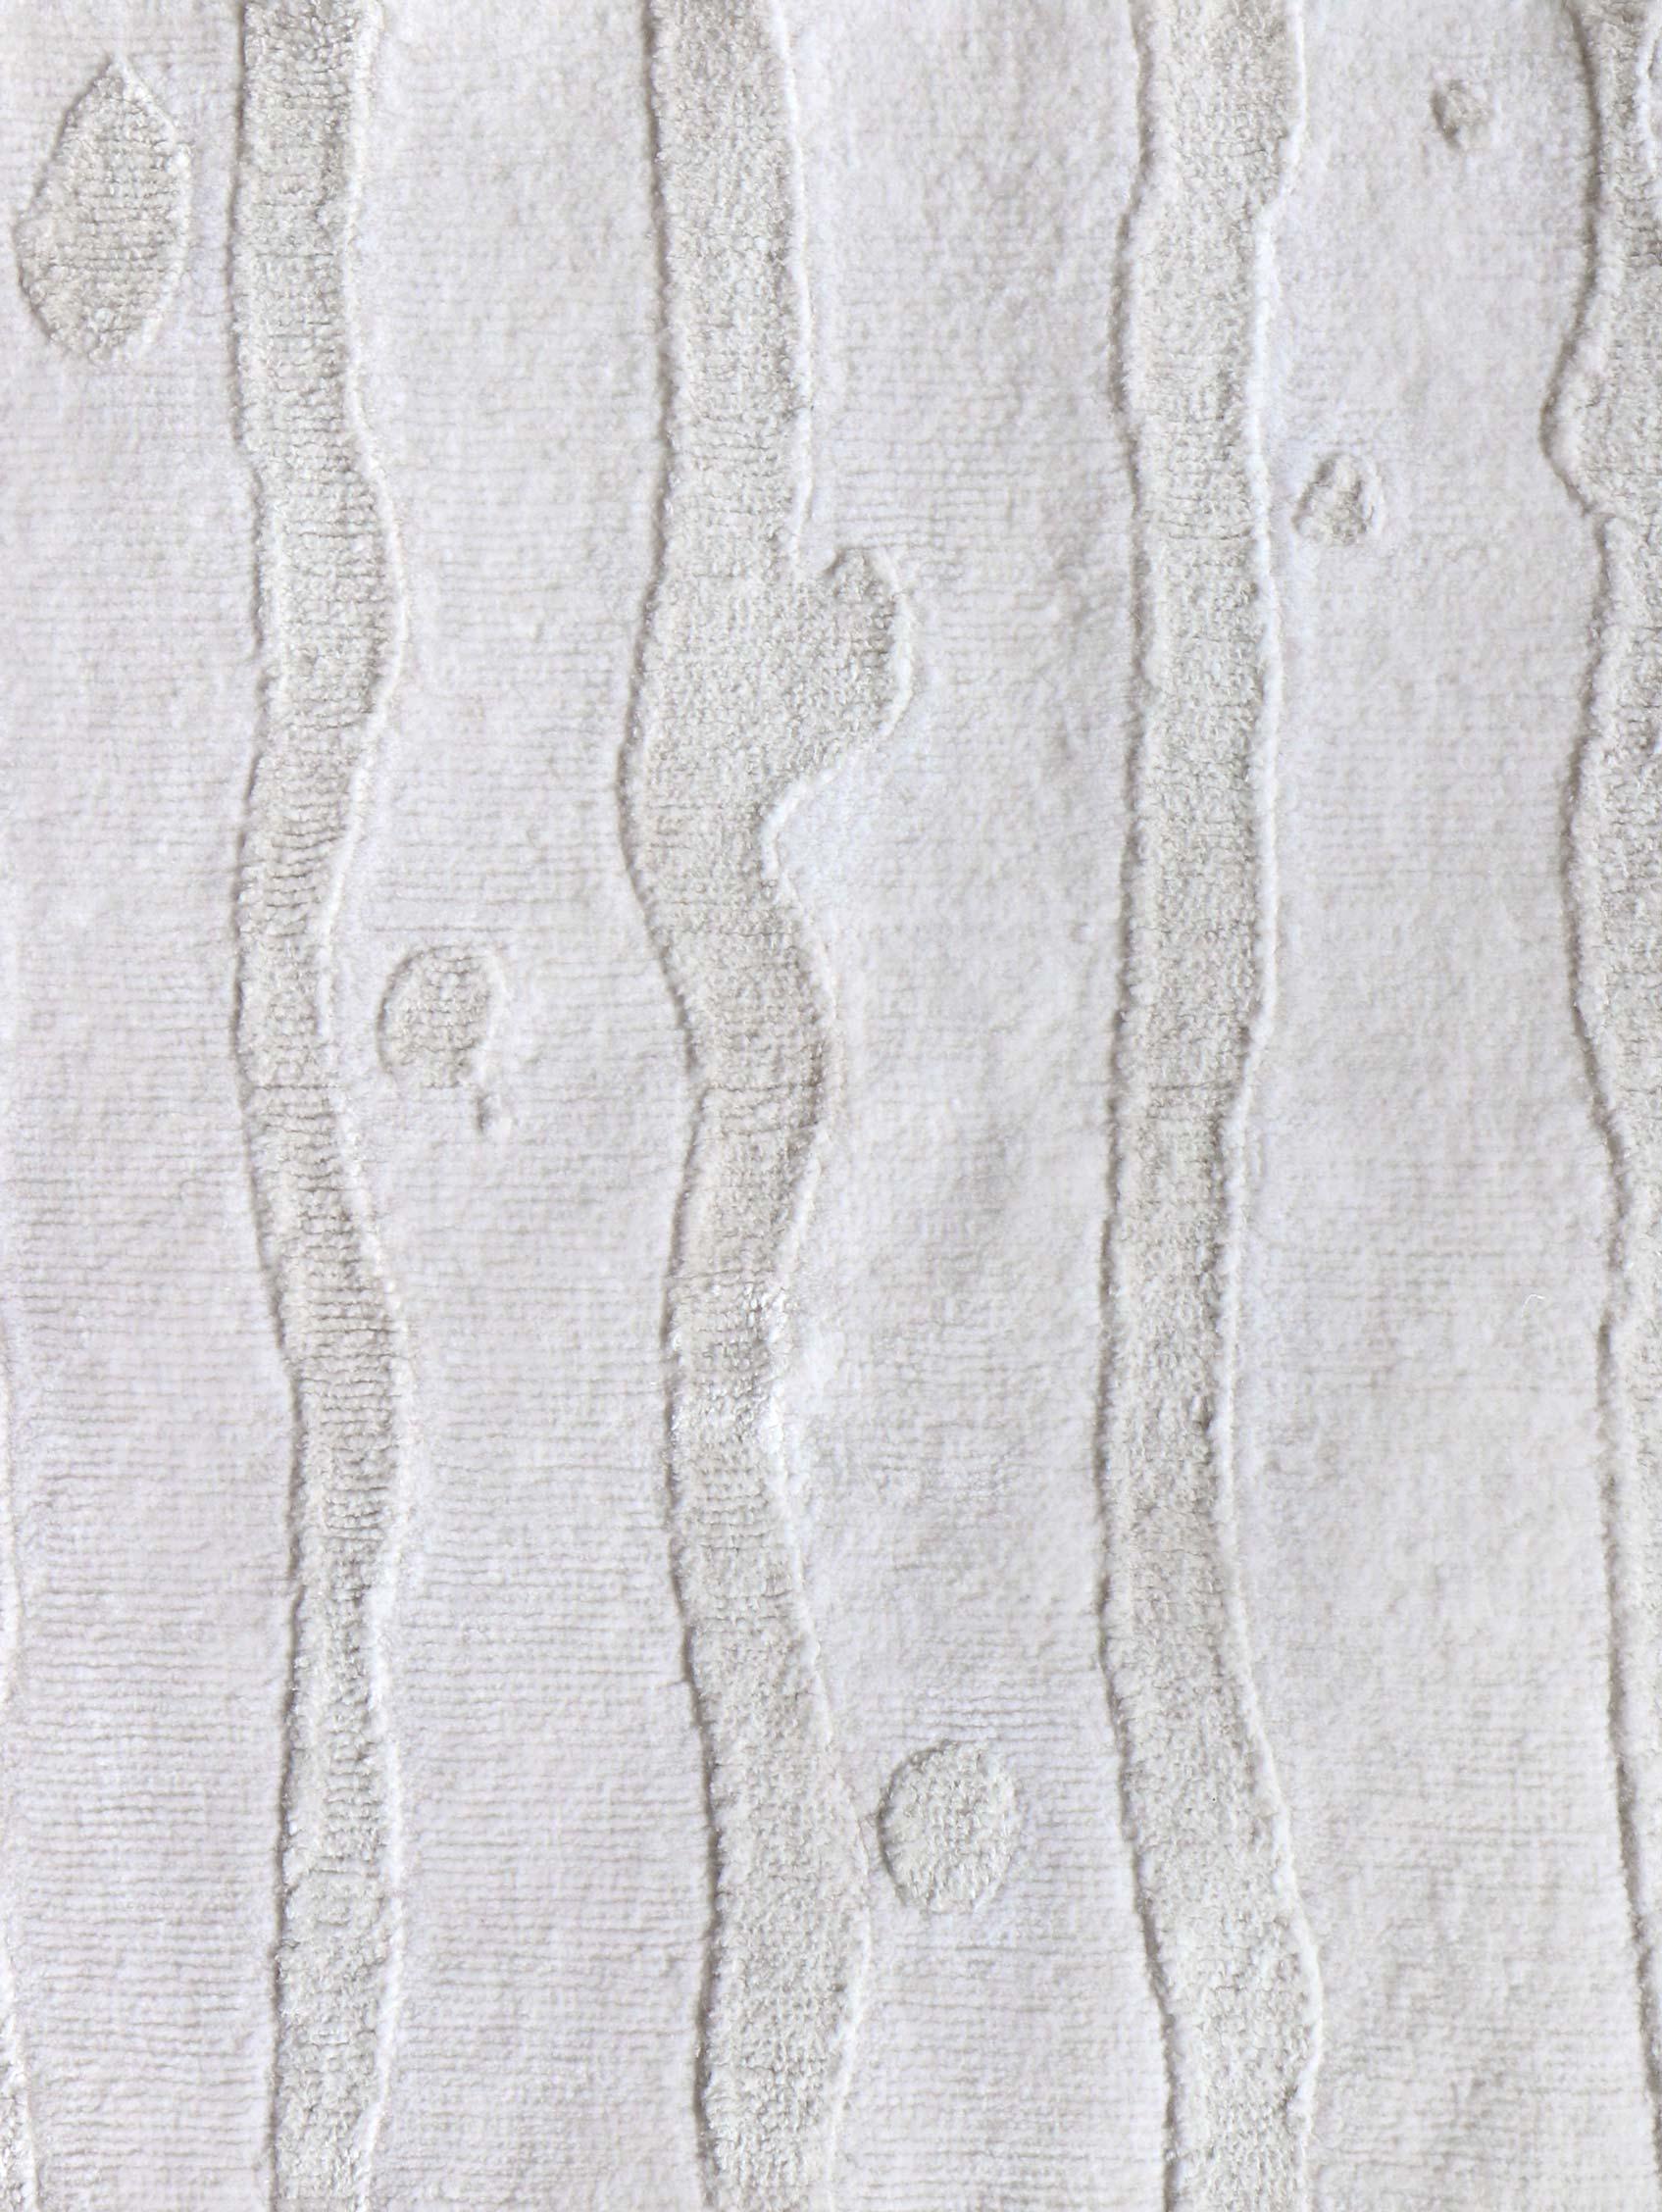 Muster des Teppichs: Drippy Stripe - Lefko Weiß
MATERIAL: 70% Seide / 30% Merinowolle
Qualität: Tibetisches Kreuzgeflecht, handgewebt 
Größe: 9'-0